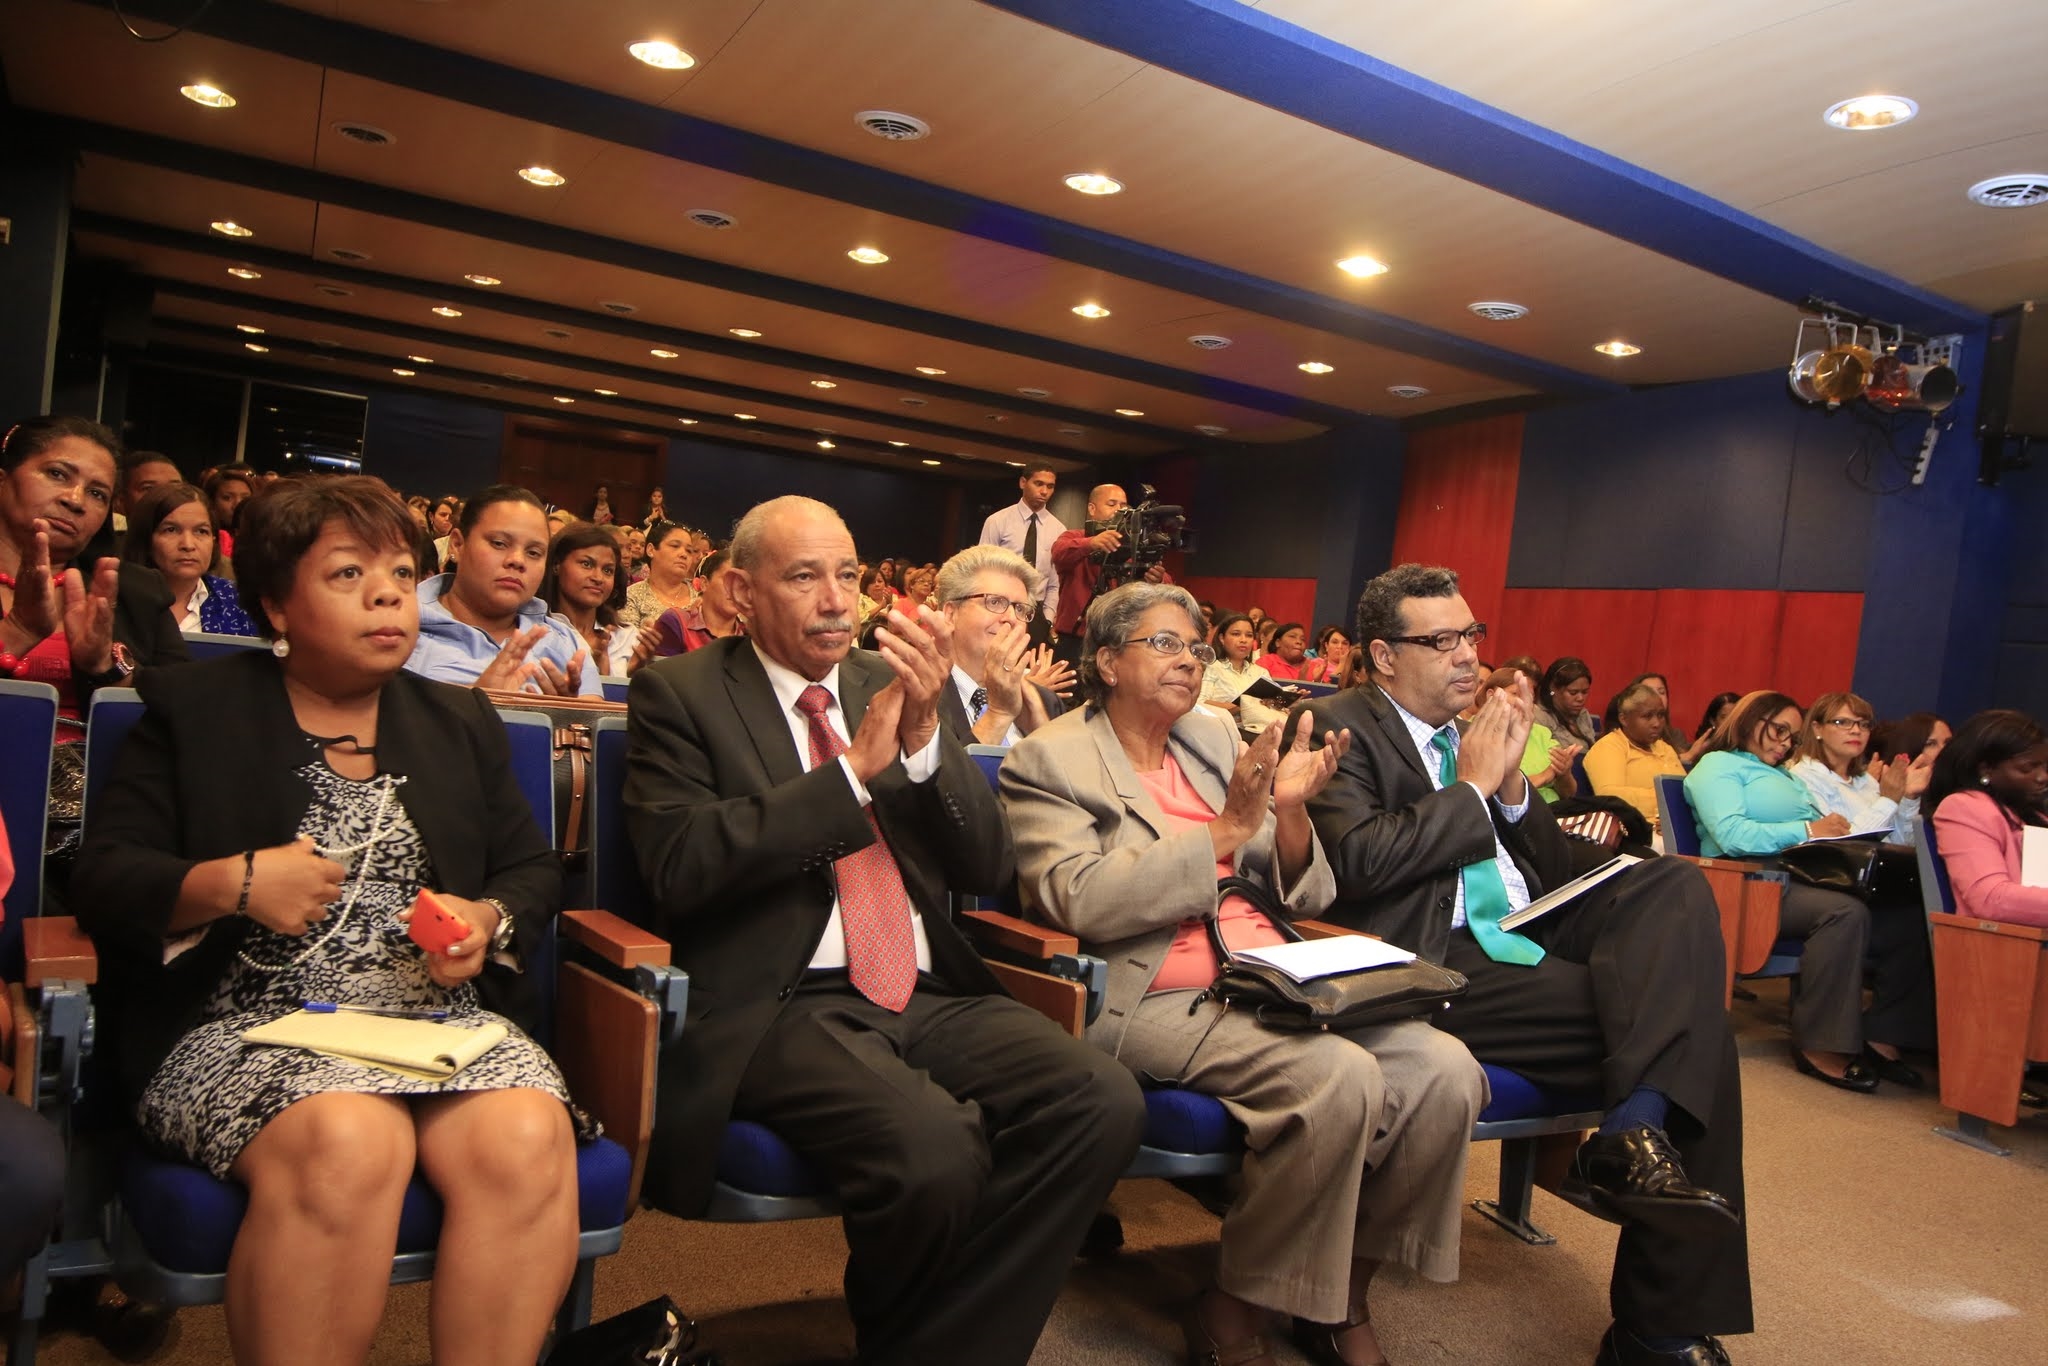 La actividad fue realizada en el Auditorio Dr. Leonel Rodríguez Rib, ubicado en el Campus principal de UNAPEC.